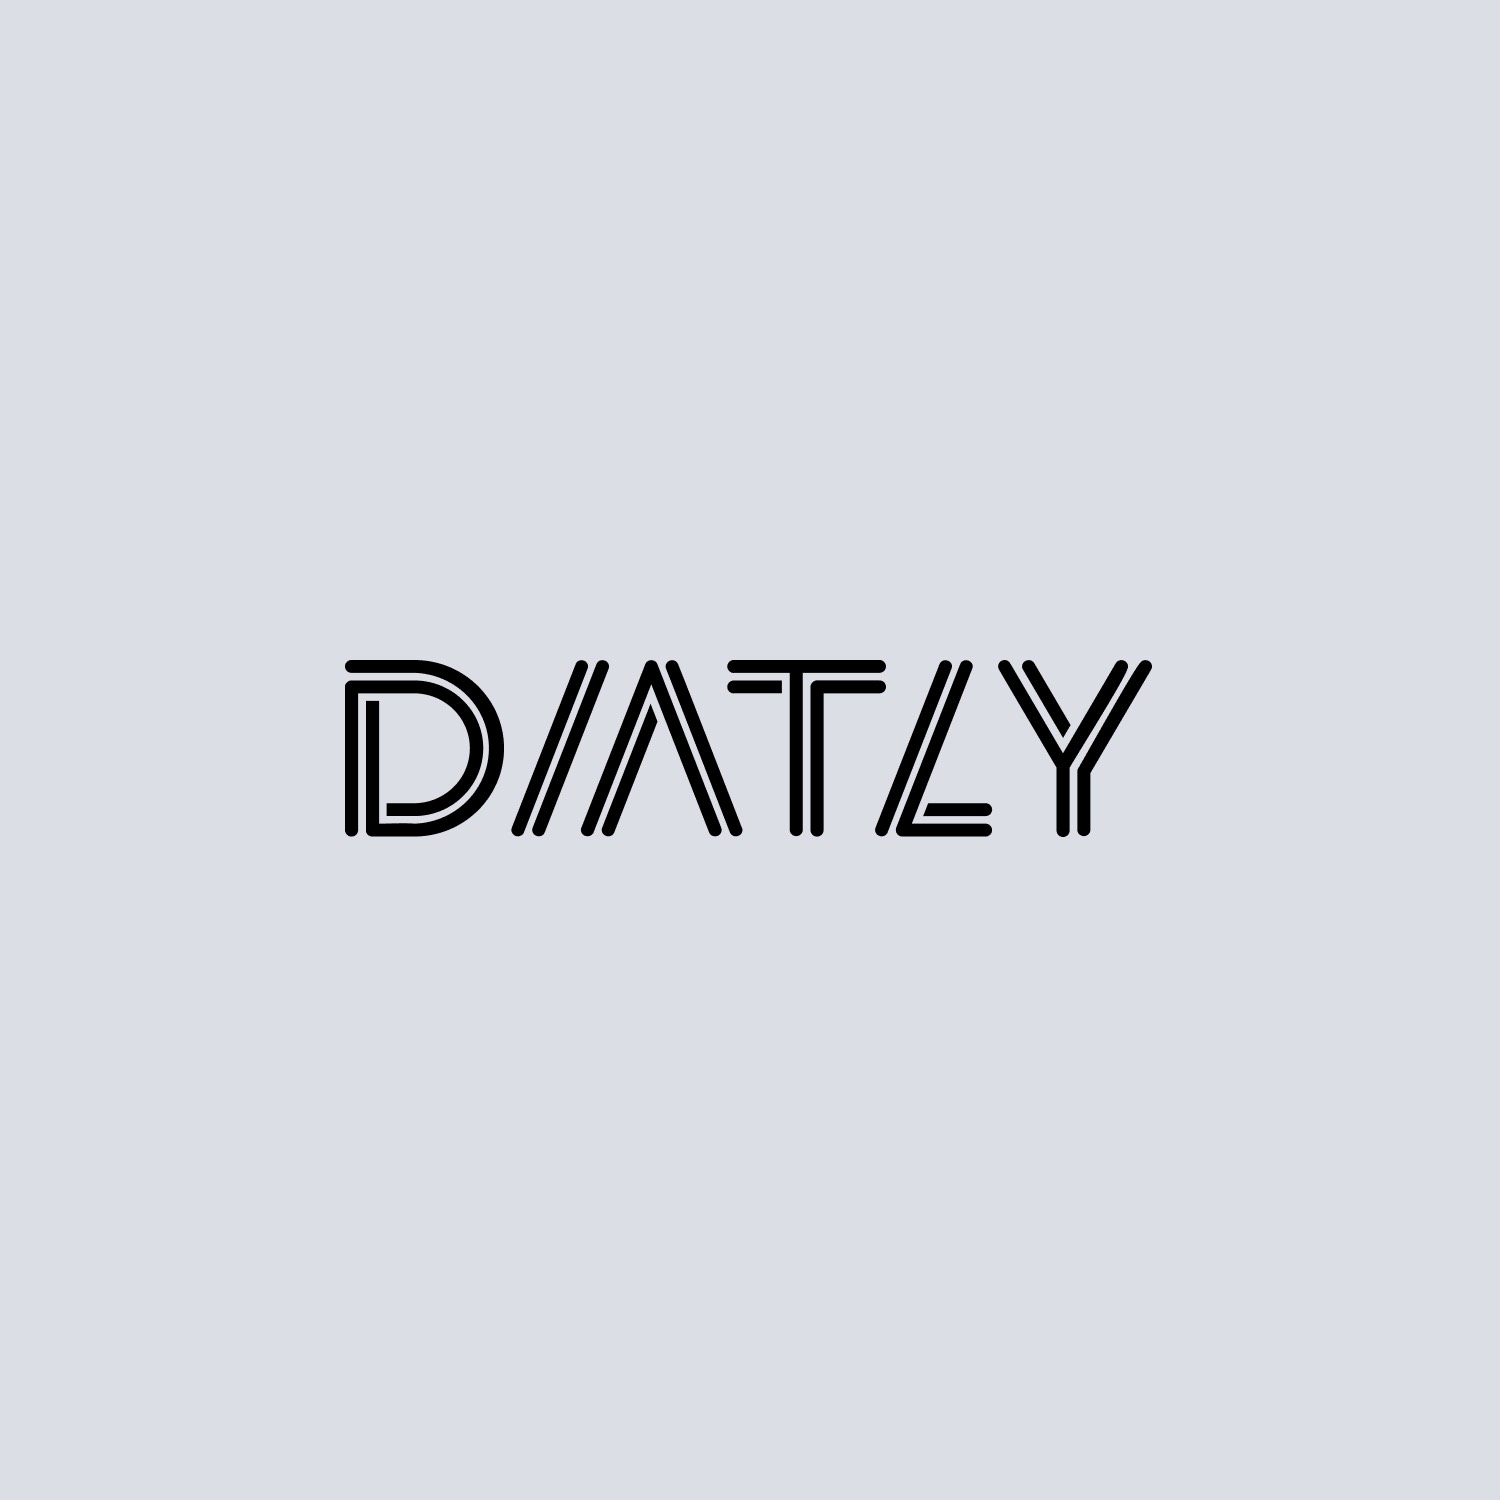 Logo of Diatly